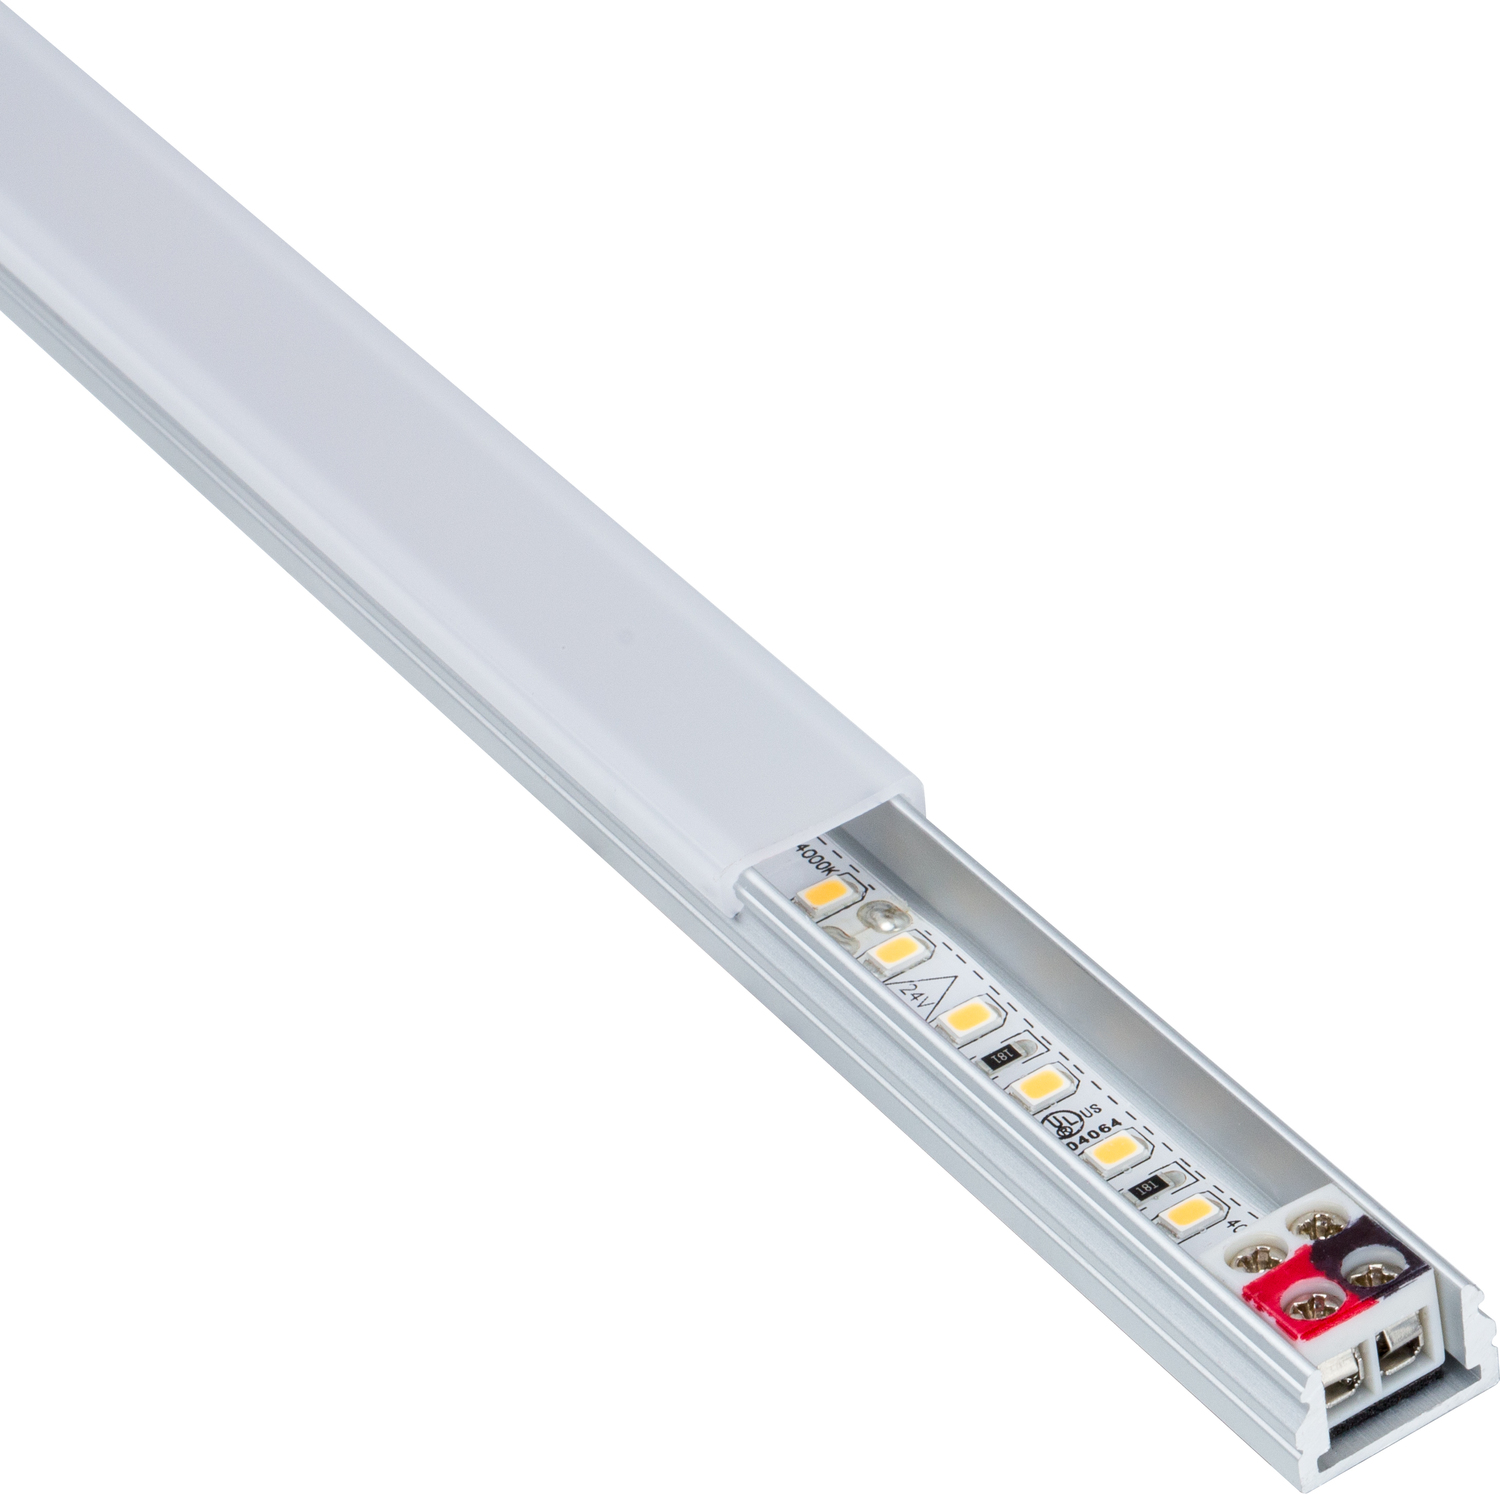 built in lights Task Lighting Linear Fixtures;Single-white Lighting Aluminum